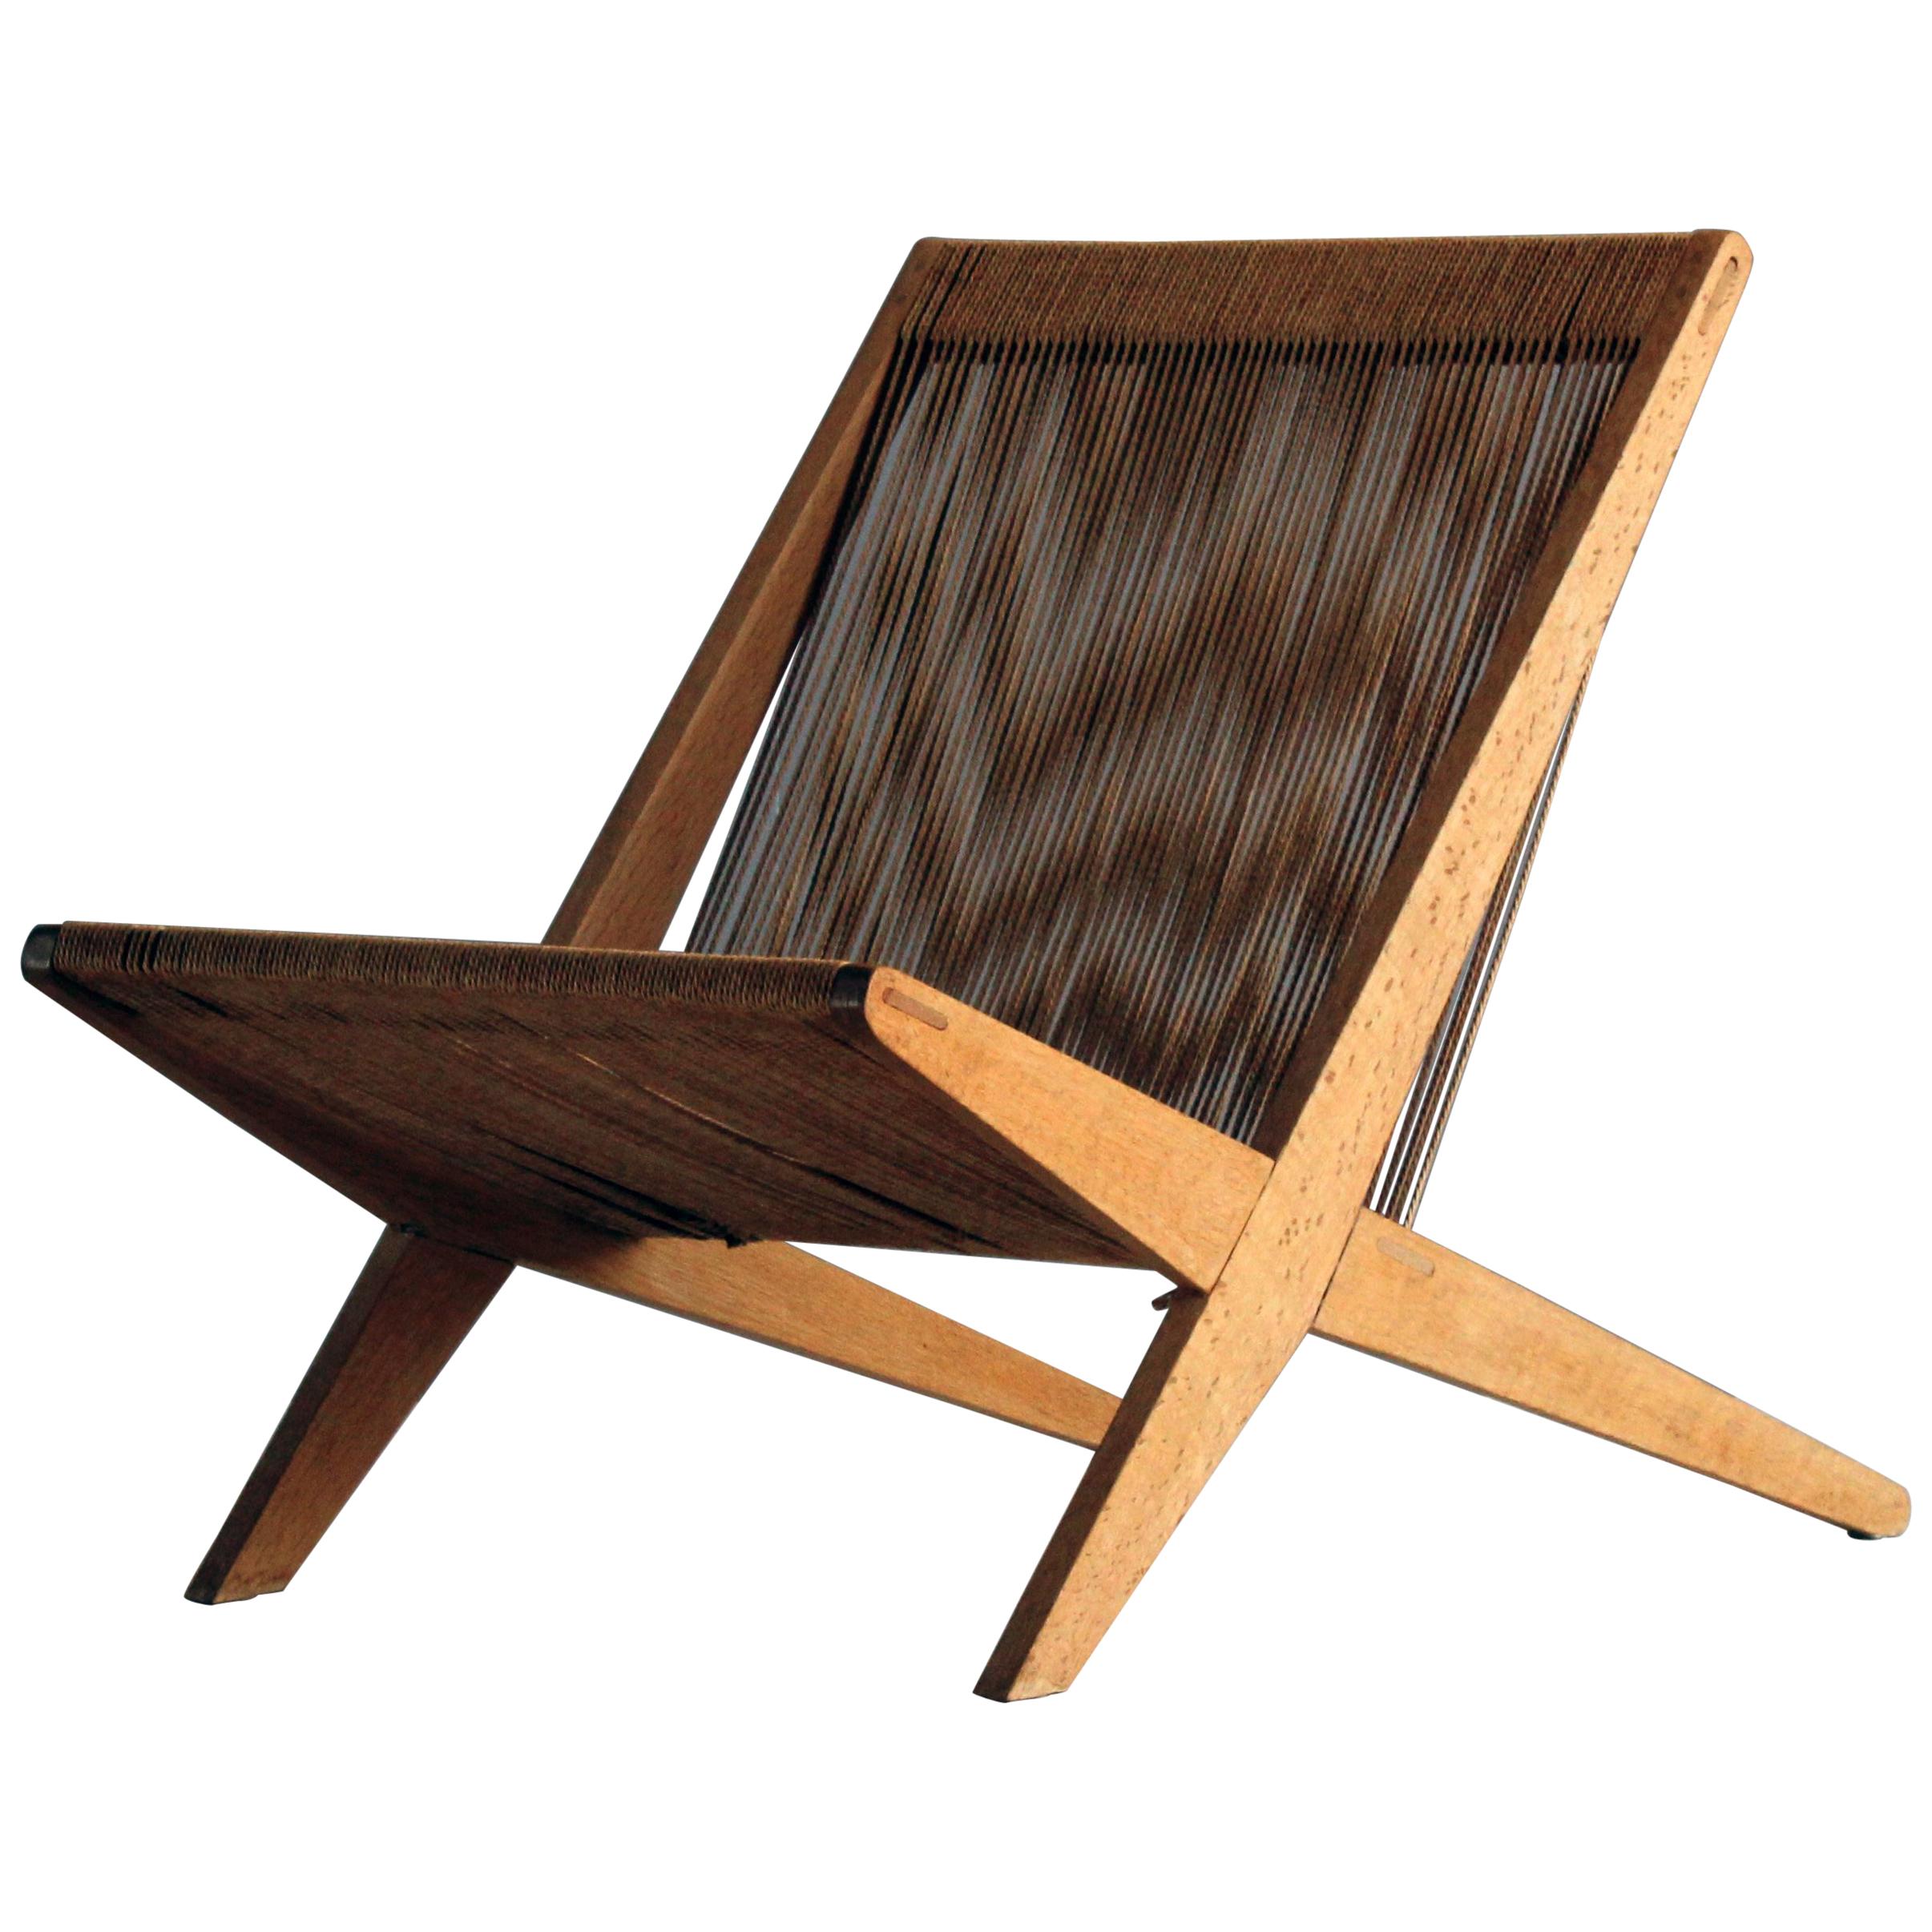 Poul Kjaerholm & Jørgen Høj (Attribution) Lounge Chair, Oak, Rope, Denmark 1950s